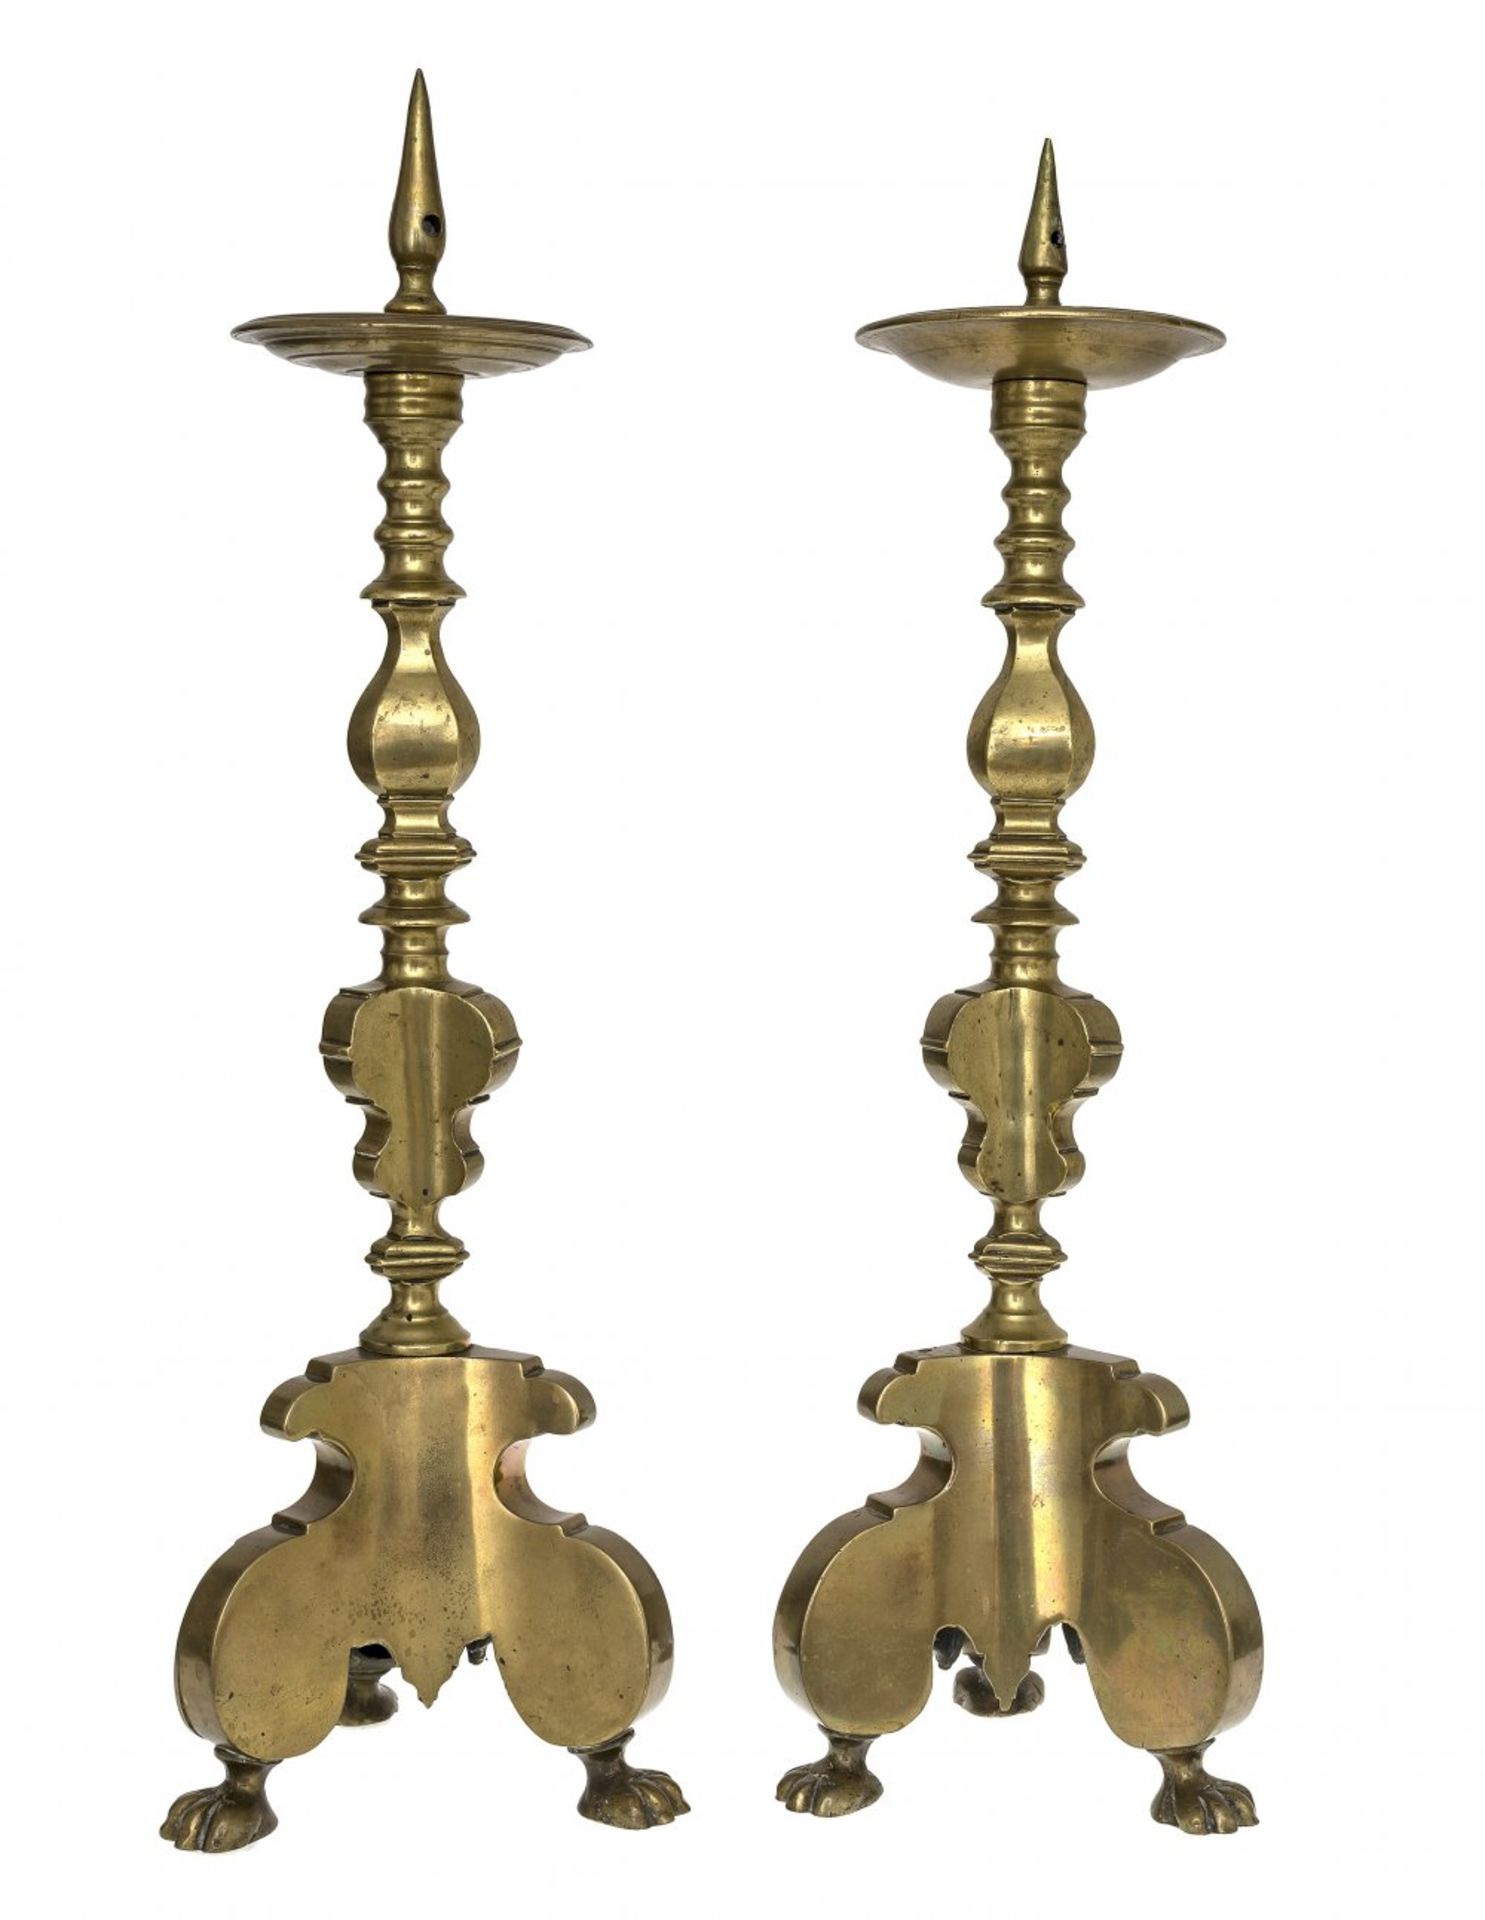 Zwei AltarleuchterNürnberg, 18. Jh. Bronze. Mehrfach profilierter Schaft, Traufteller mit